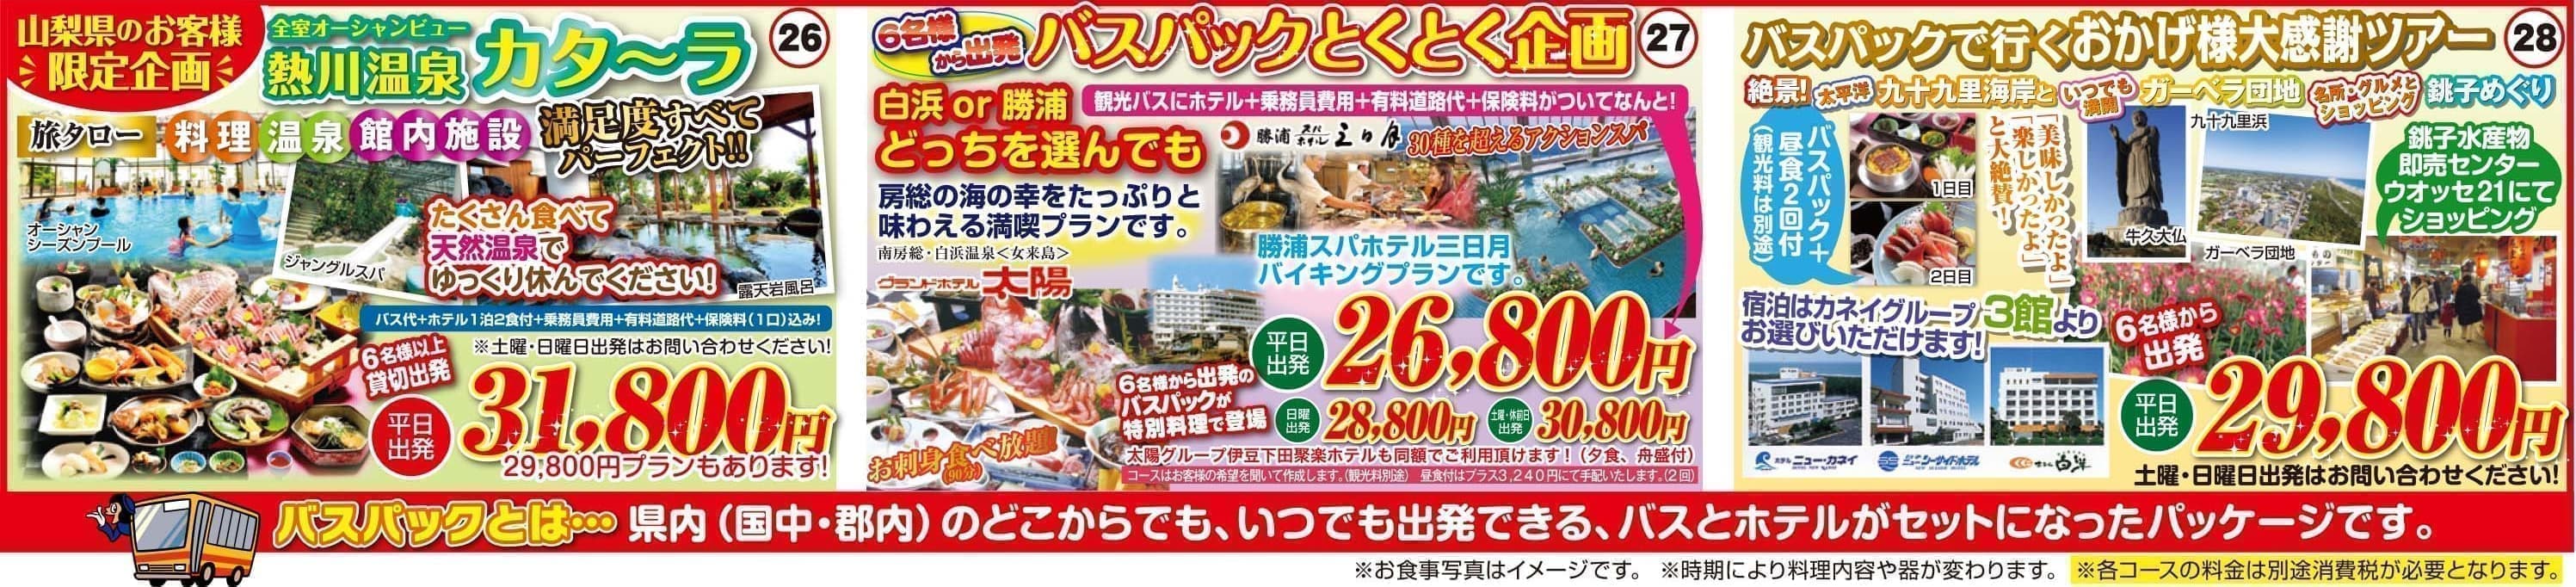 日本観光旅タローの大人気高級旅館格安観光バスパック